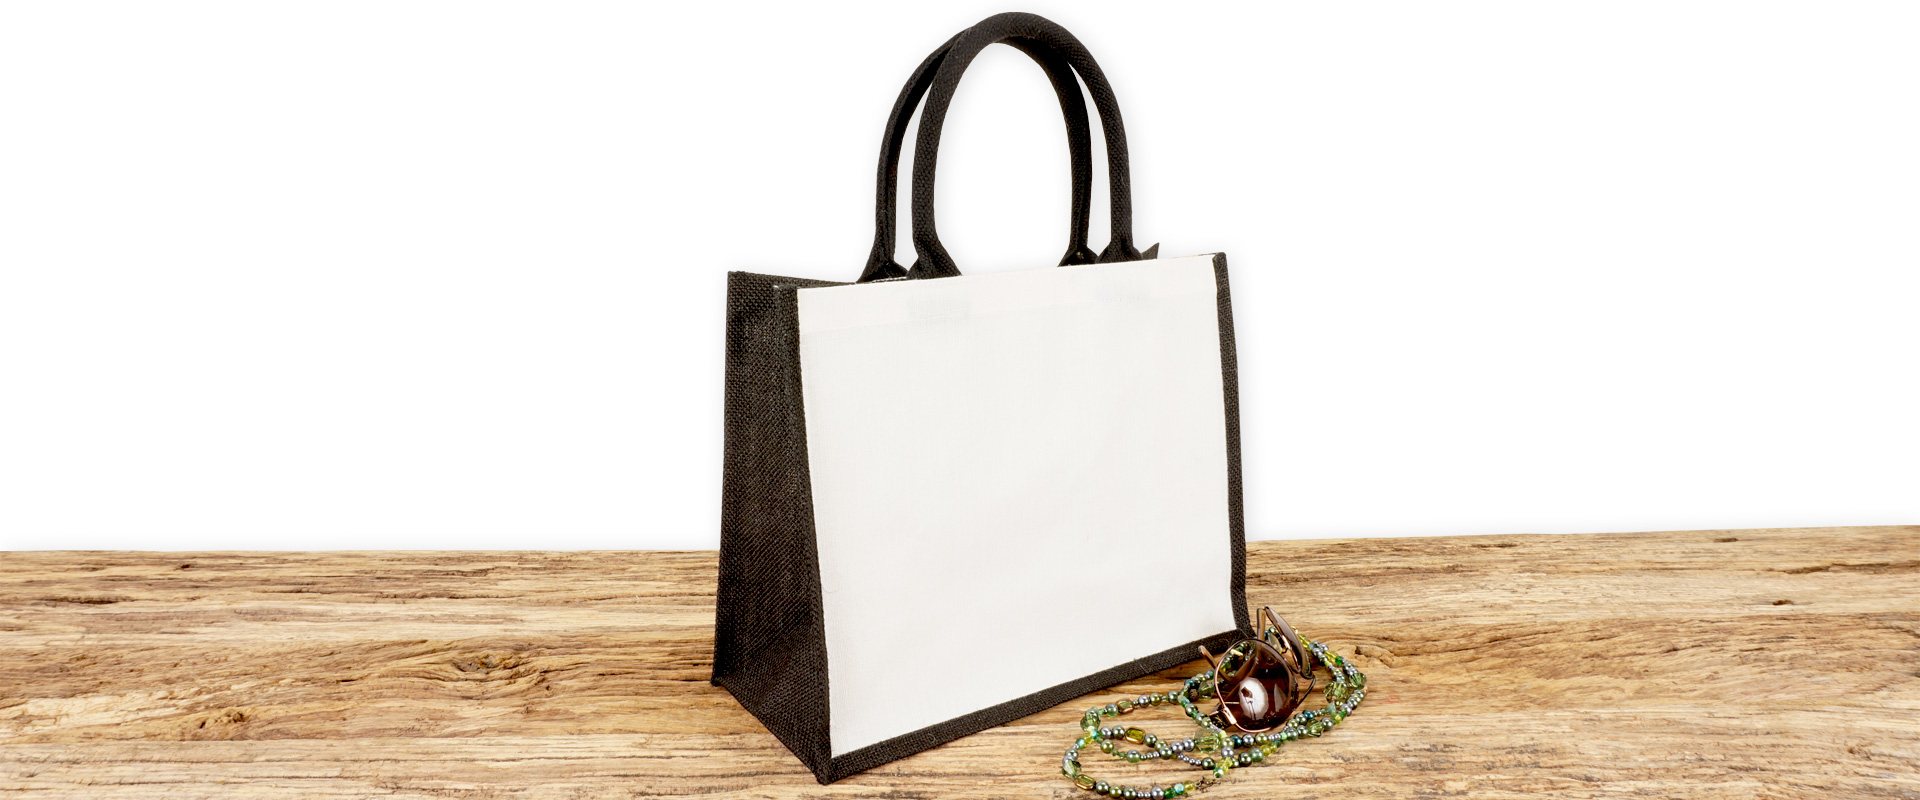 Einkaufstasche aus Jute und Baumwolle zum Bedrucken, klein, schwarz-weiß mit Seiten-Bodenfalte und mit kurzen runden Tragegriffen auf Holz.